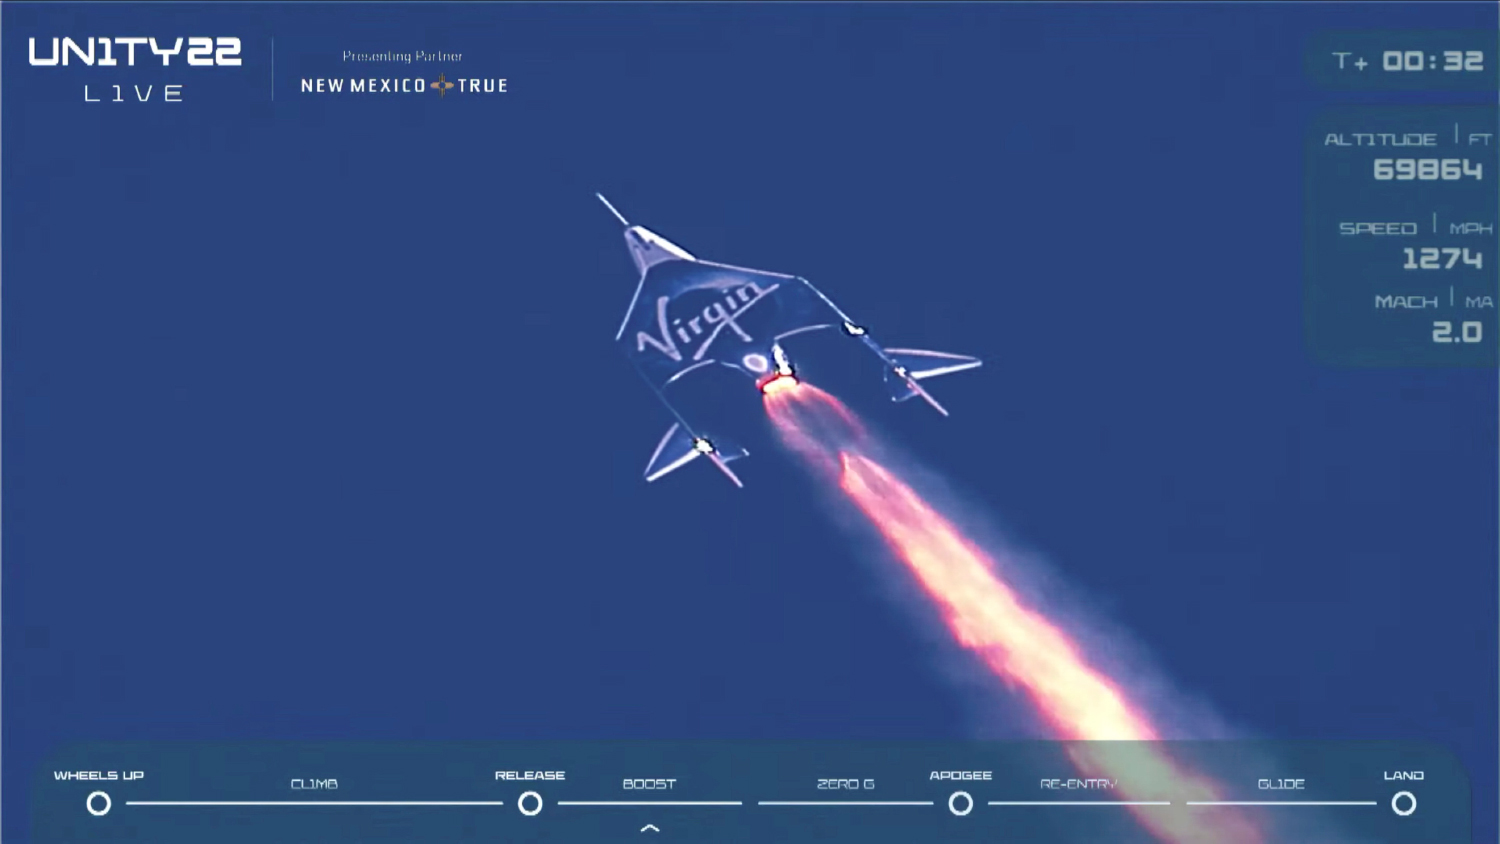 Virgin Galactic открыла продажу билетов на полеты в космос стоимостью $450 000